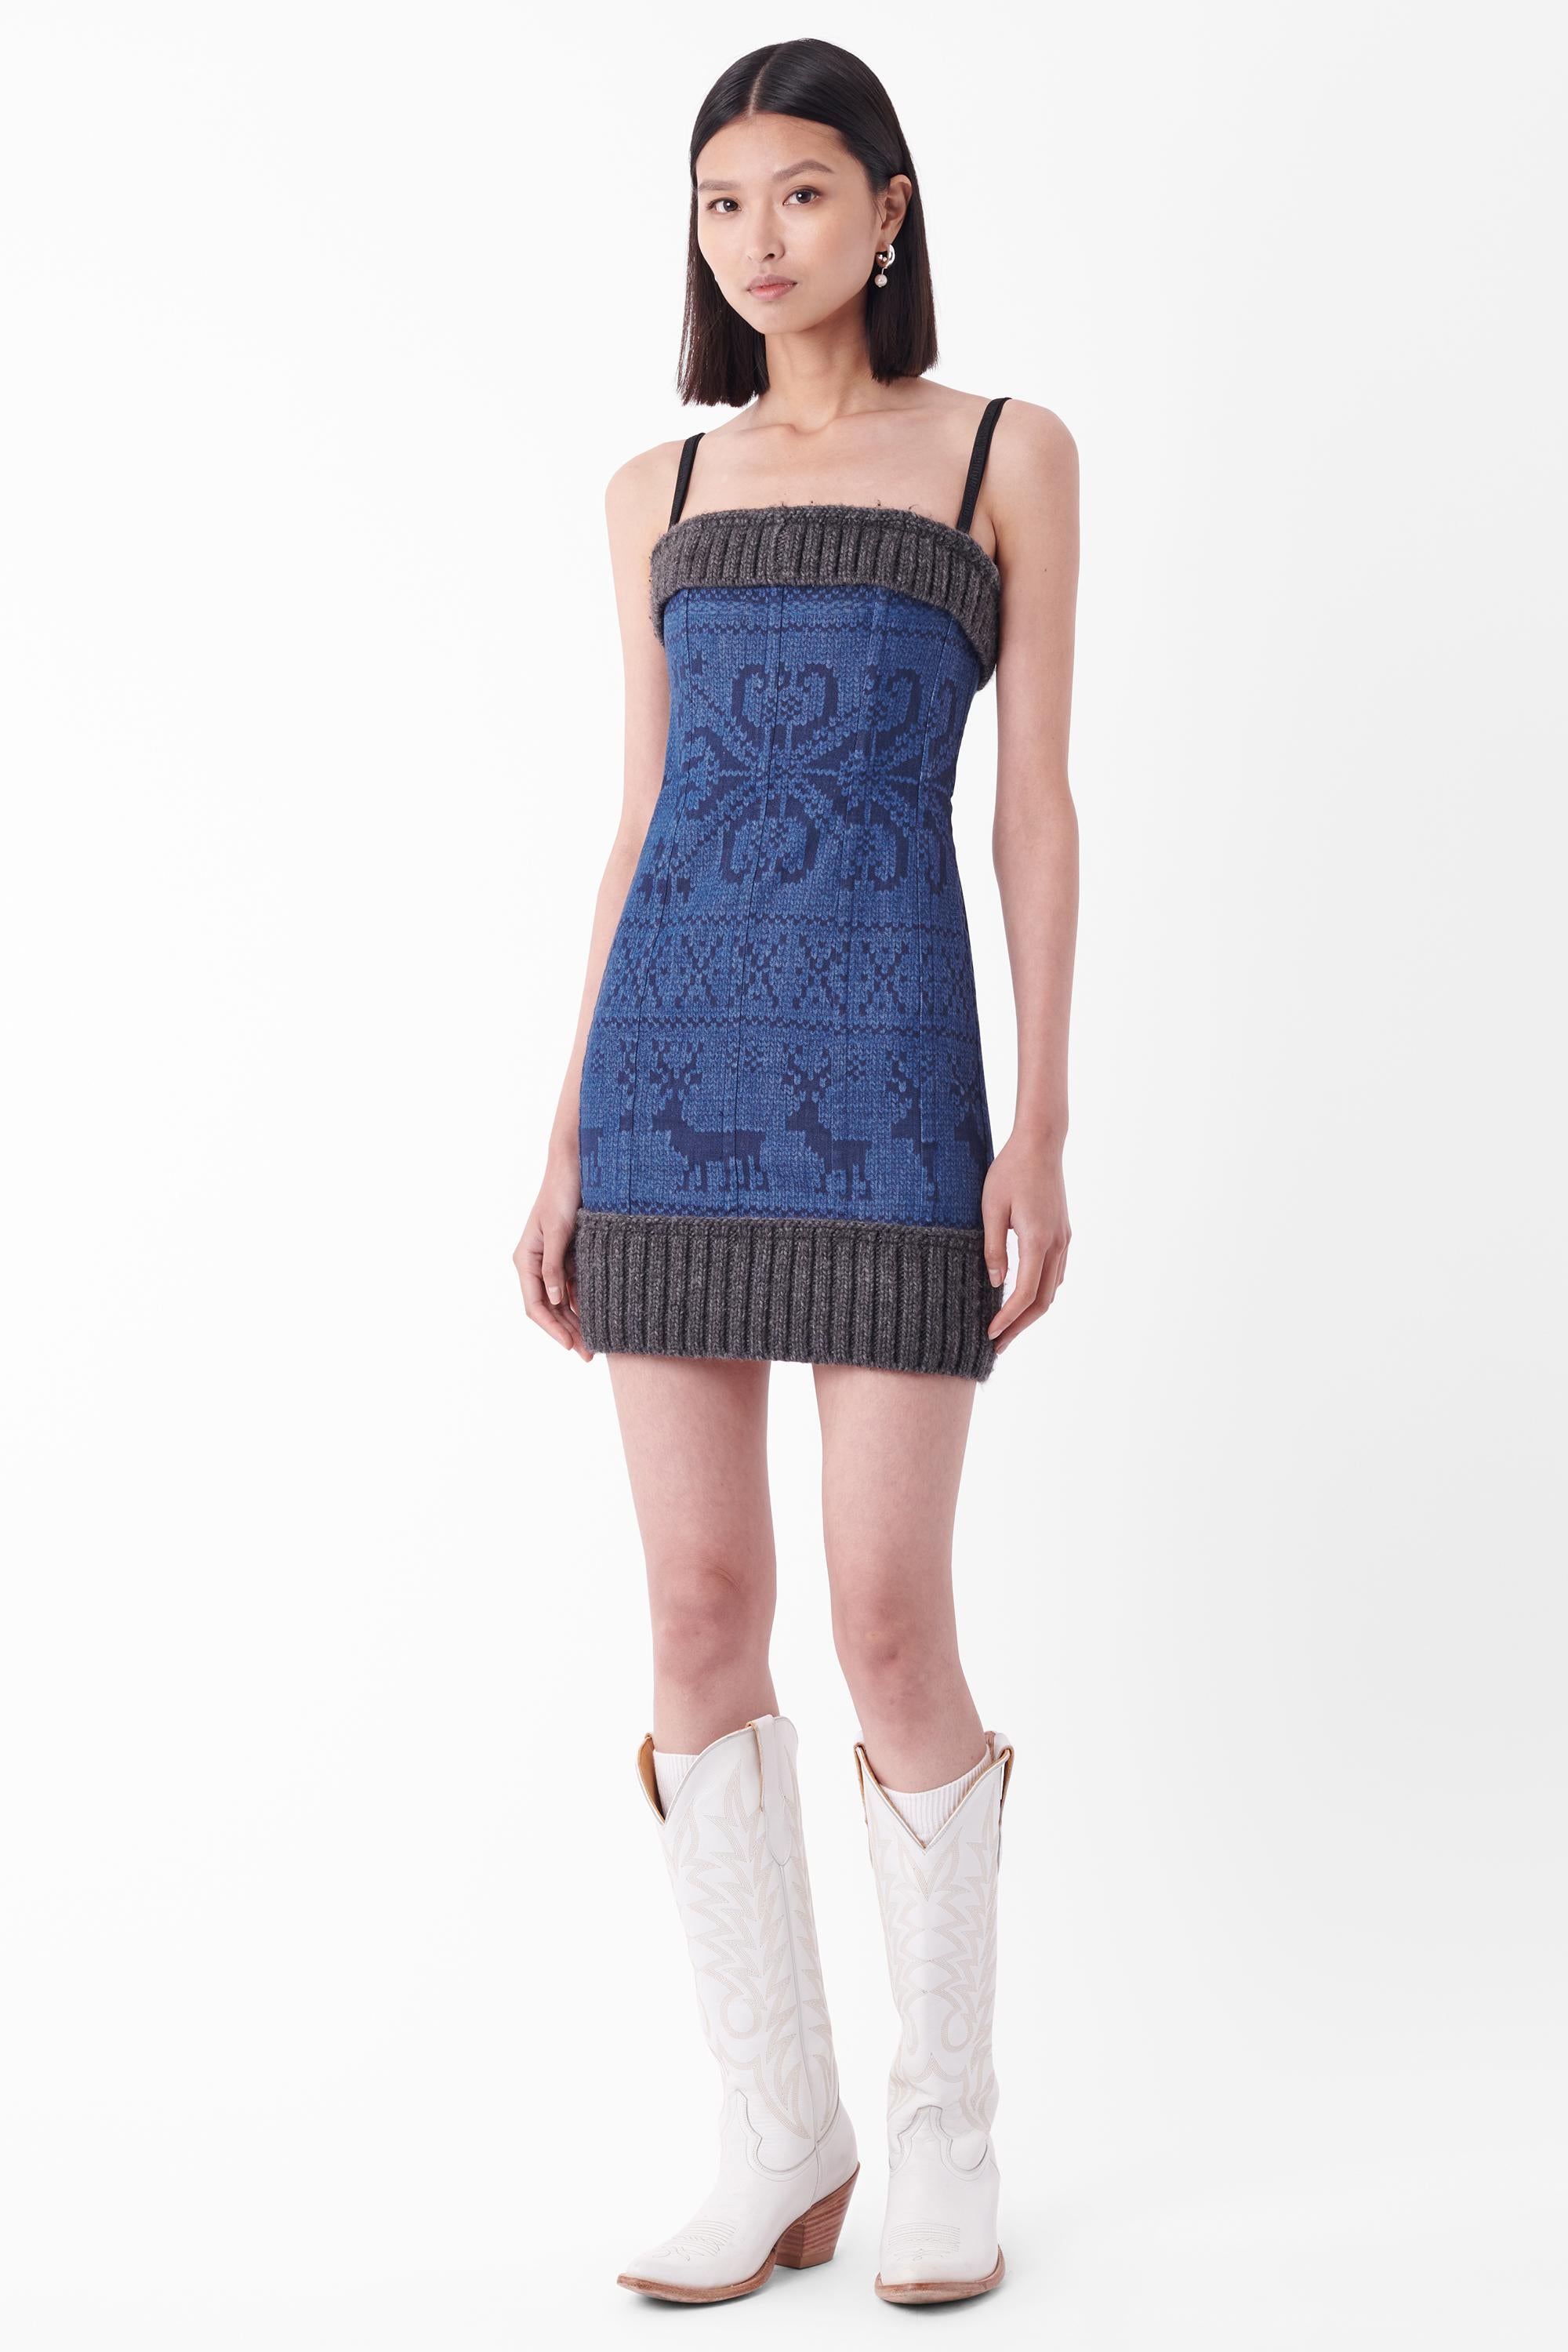 Dolce & Gabbana F/W 2010 Runway Denim Knit Mini Dress For Sale 1